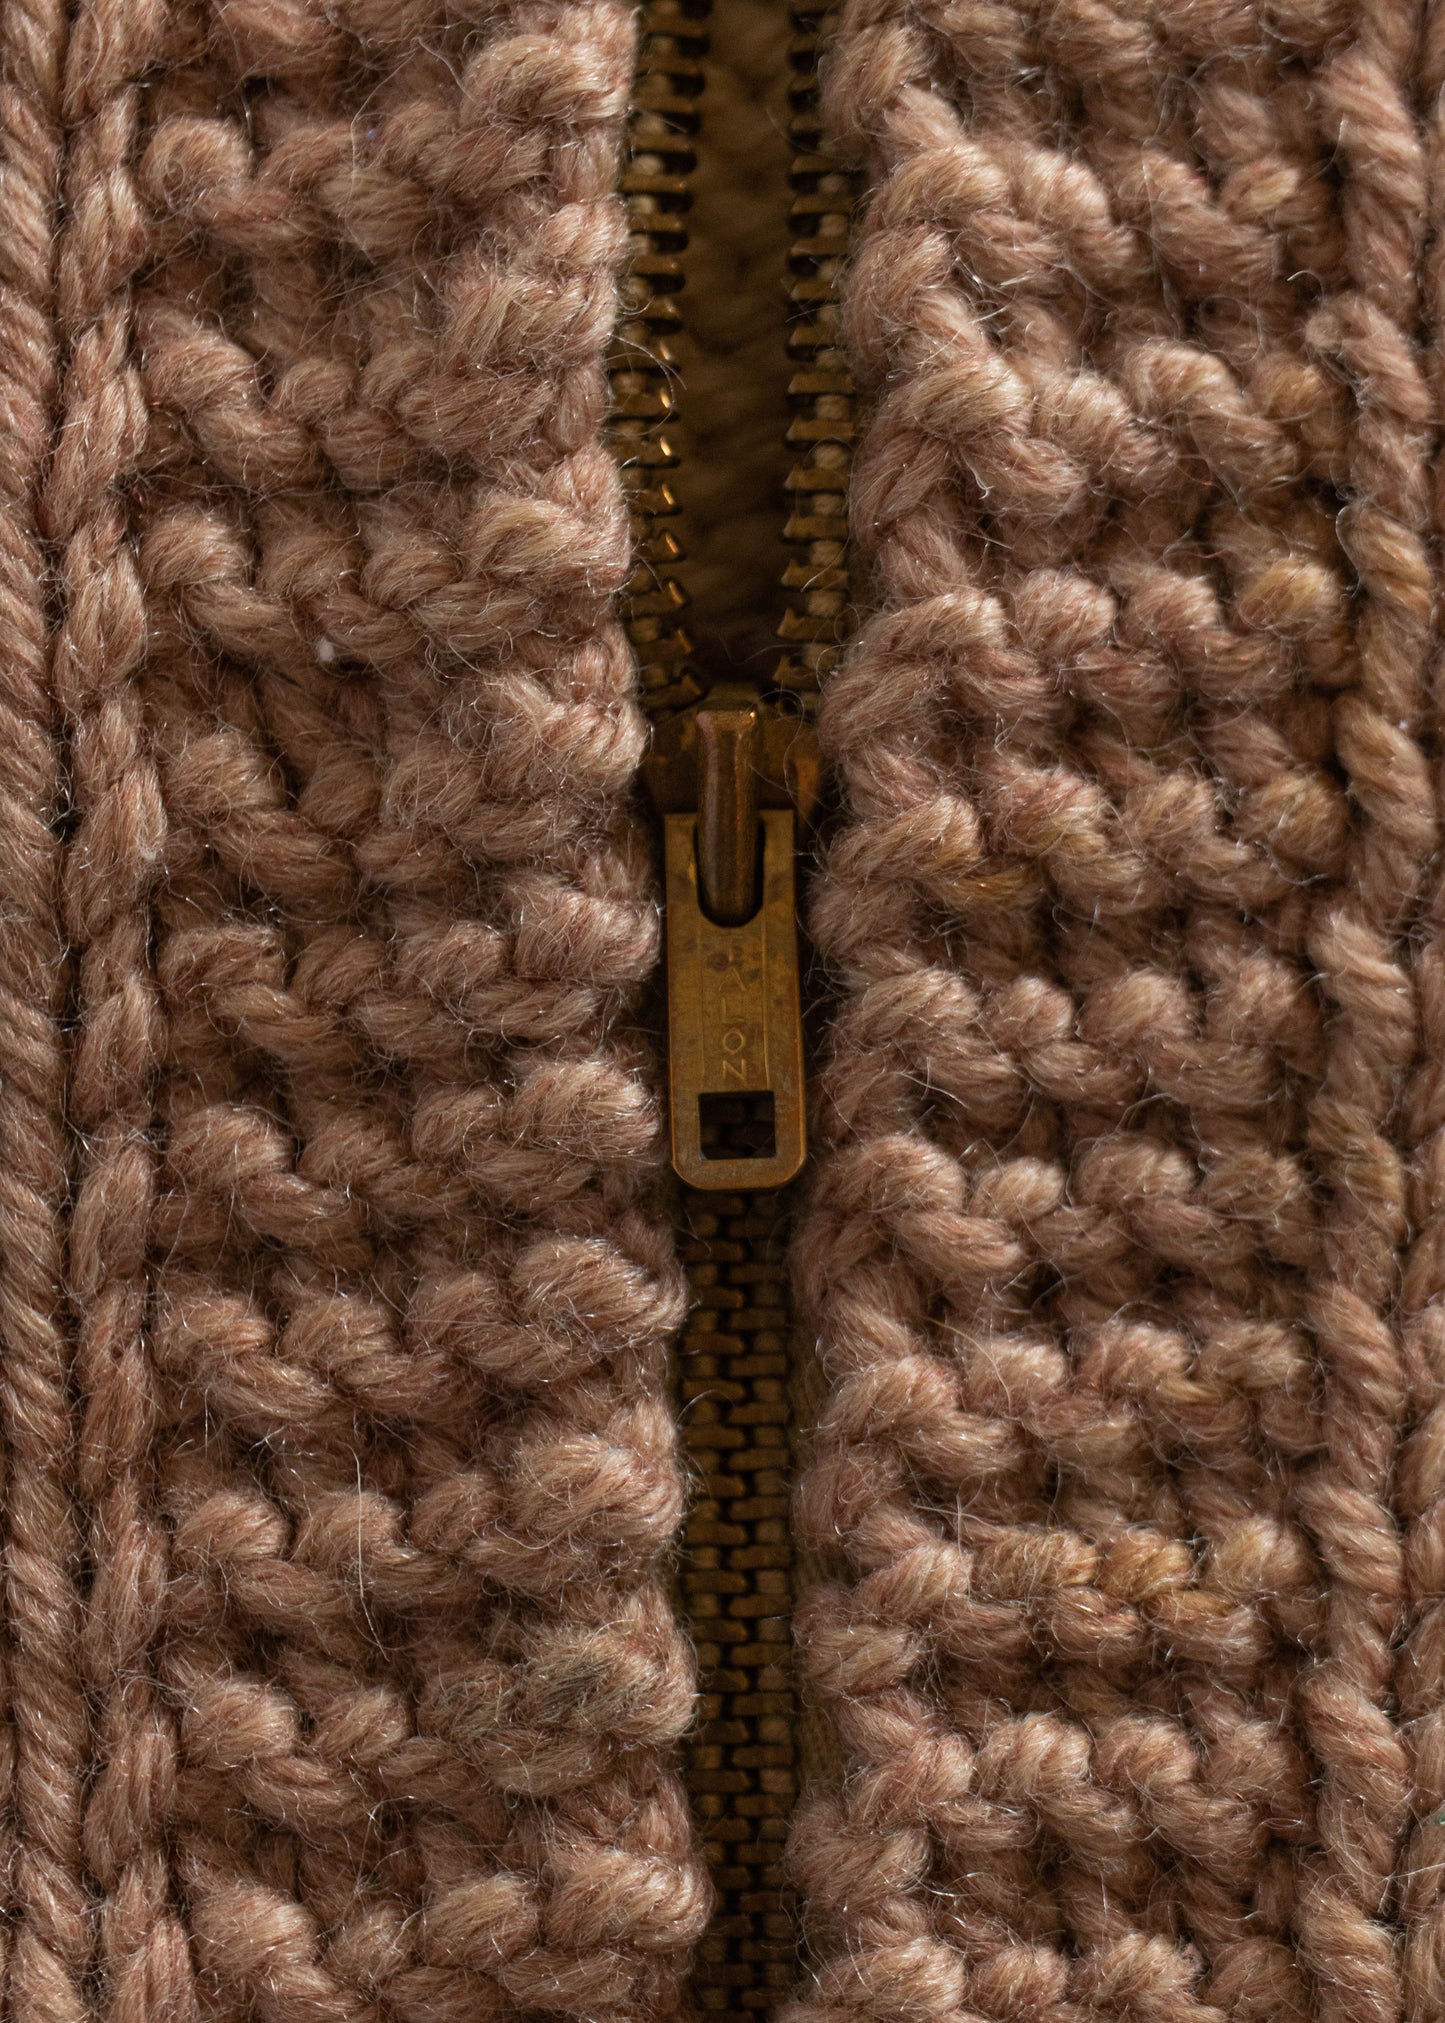 1980s Duck Pattern Cowichan Style Wool Cardigan Size M/L